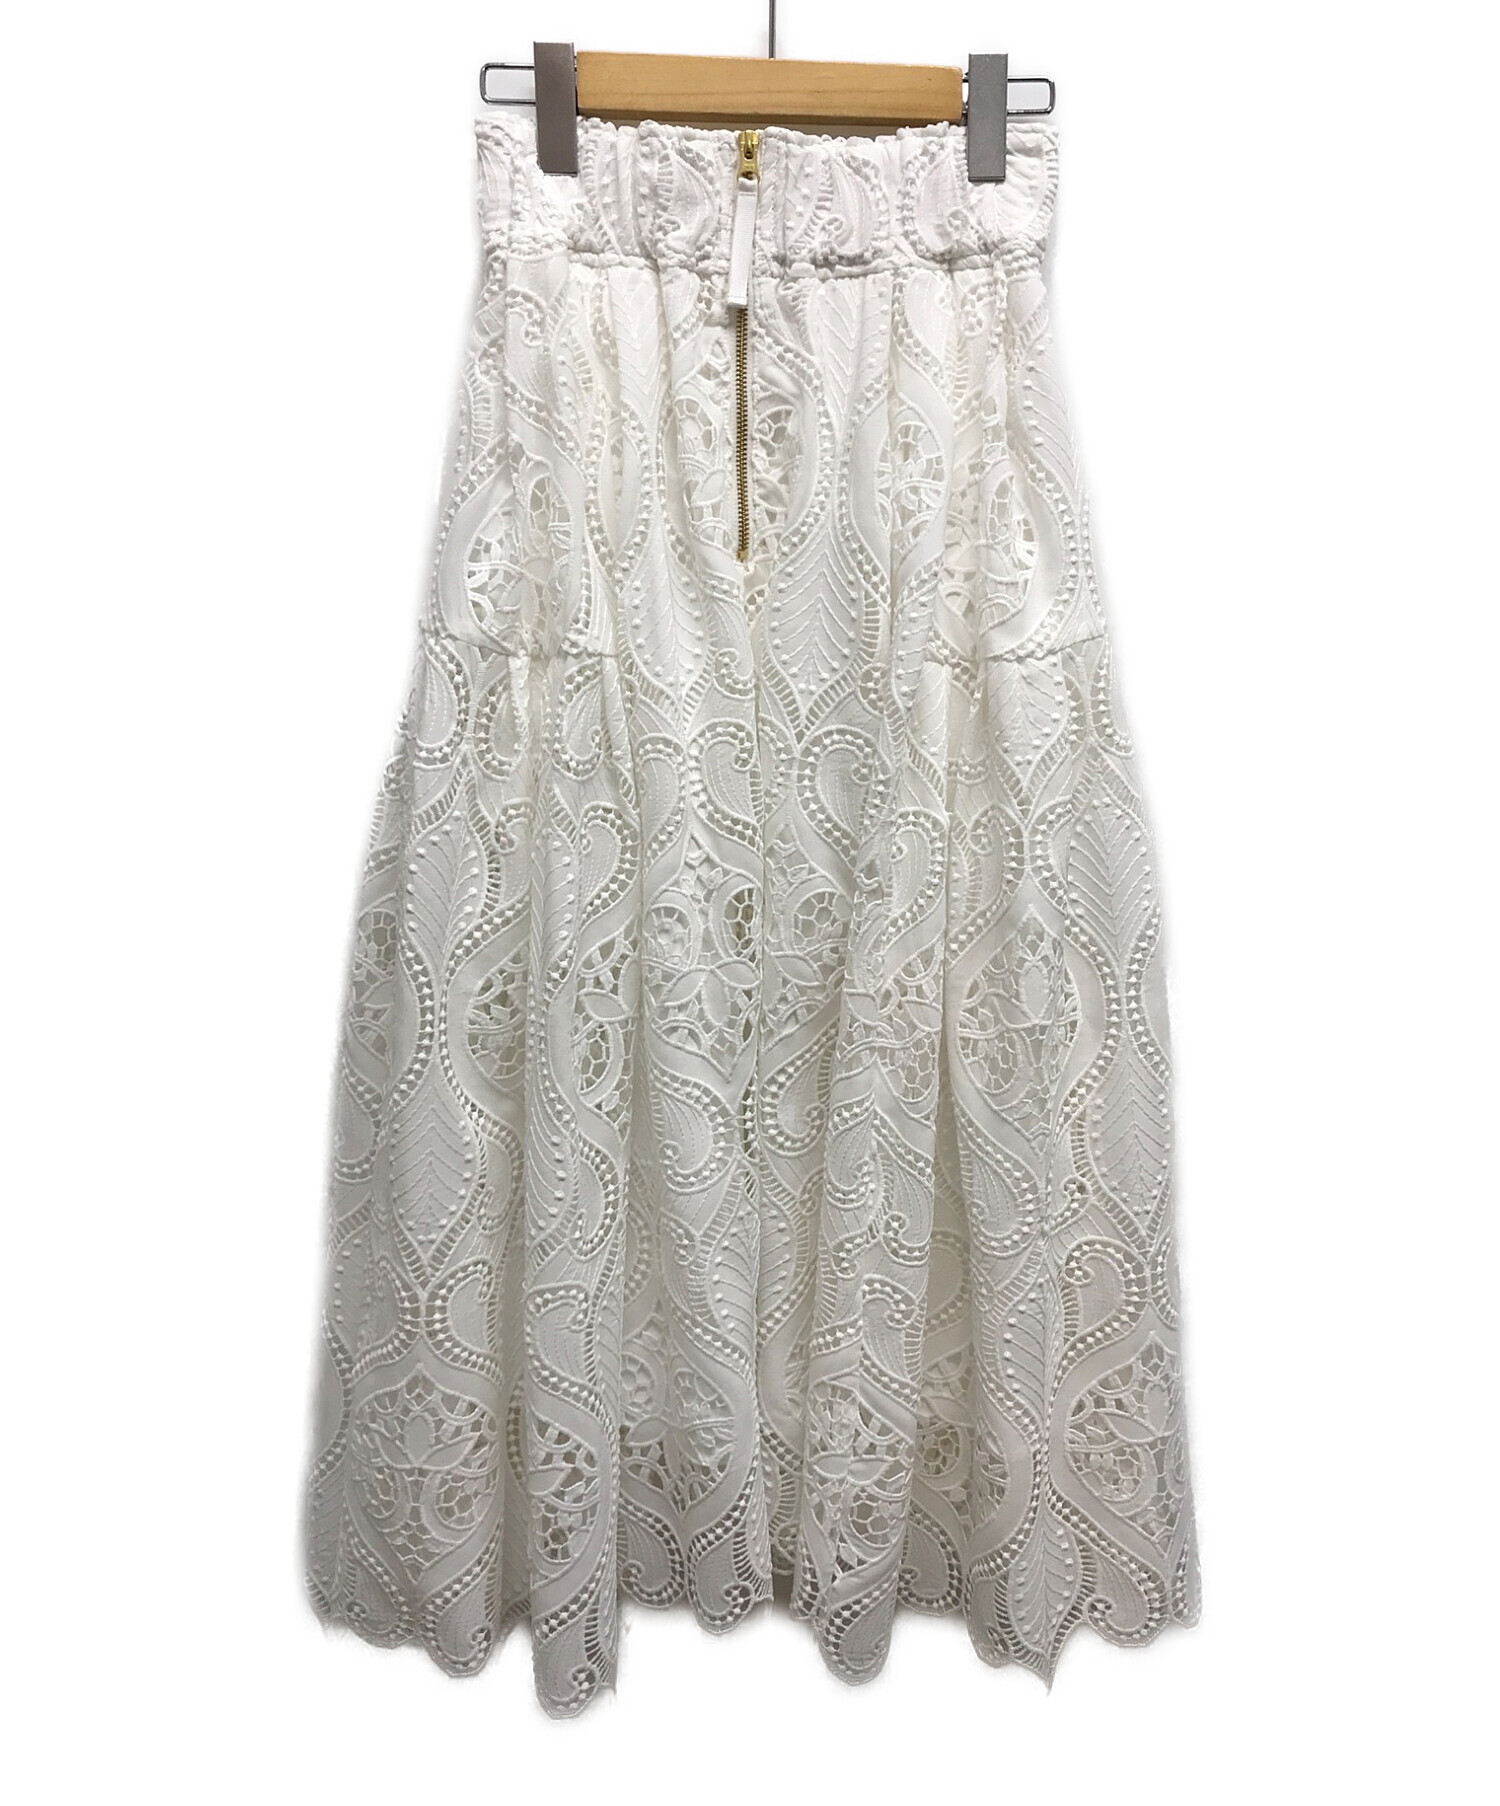 JENNE (ジェンヌ) 総レースタックフレンチスカート ホワイト サイズ:M